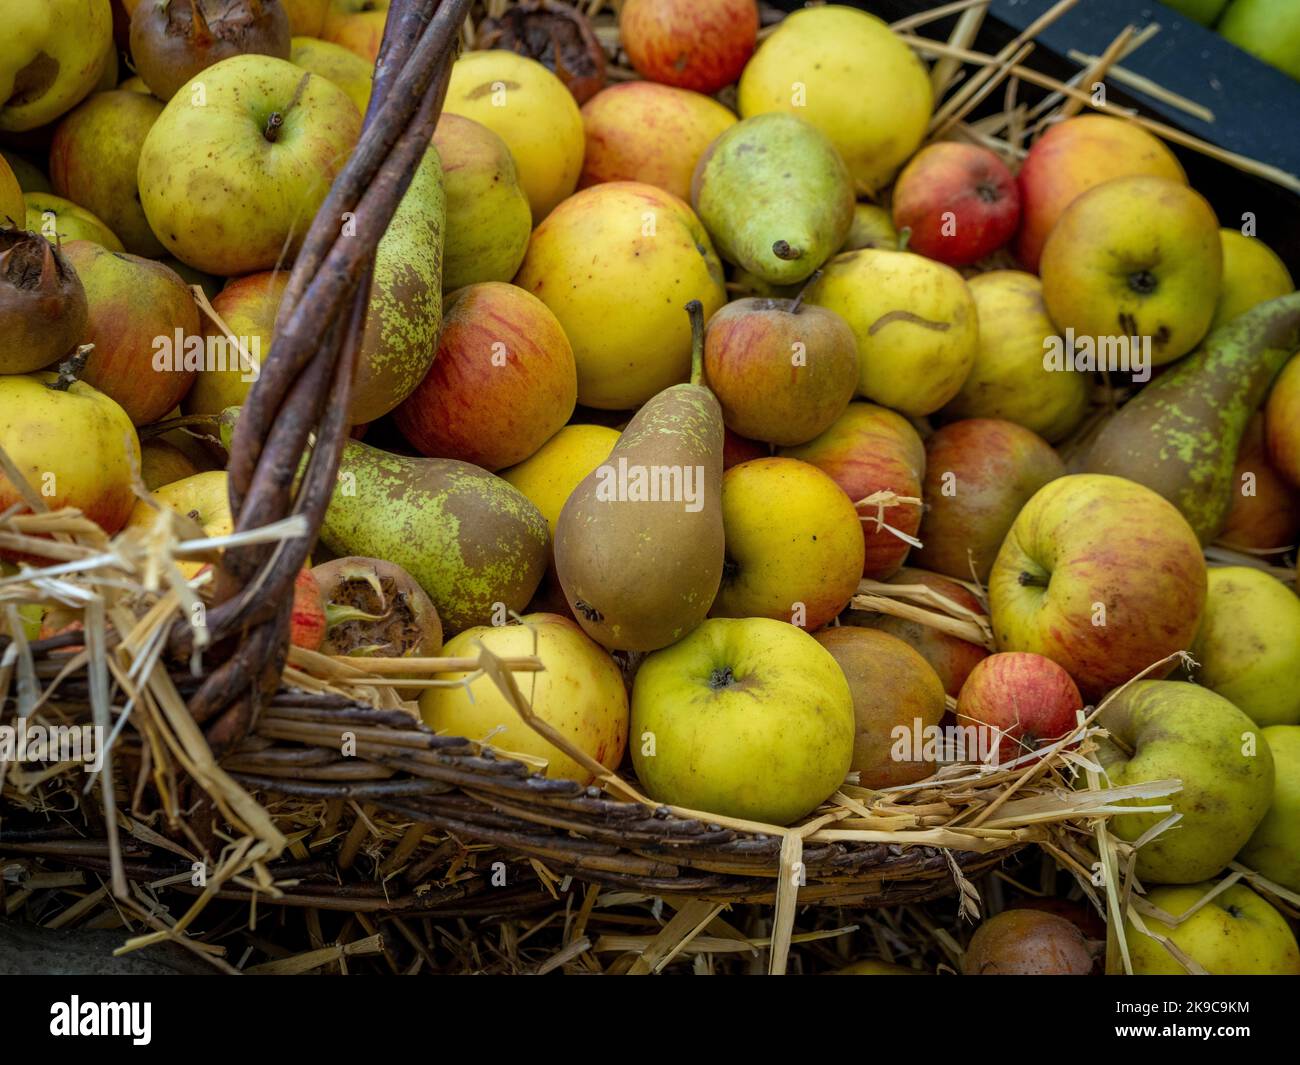 Nahaufnahme eines Weidenkorbes mit Äpfeln, Birnen und Mispel-Früchten. Stockfoto